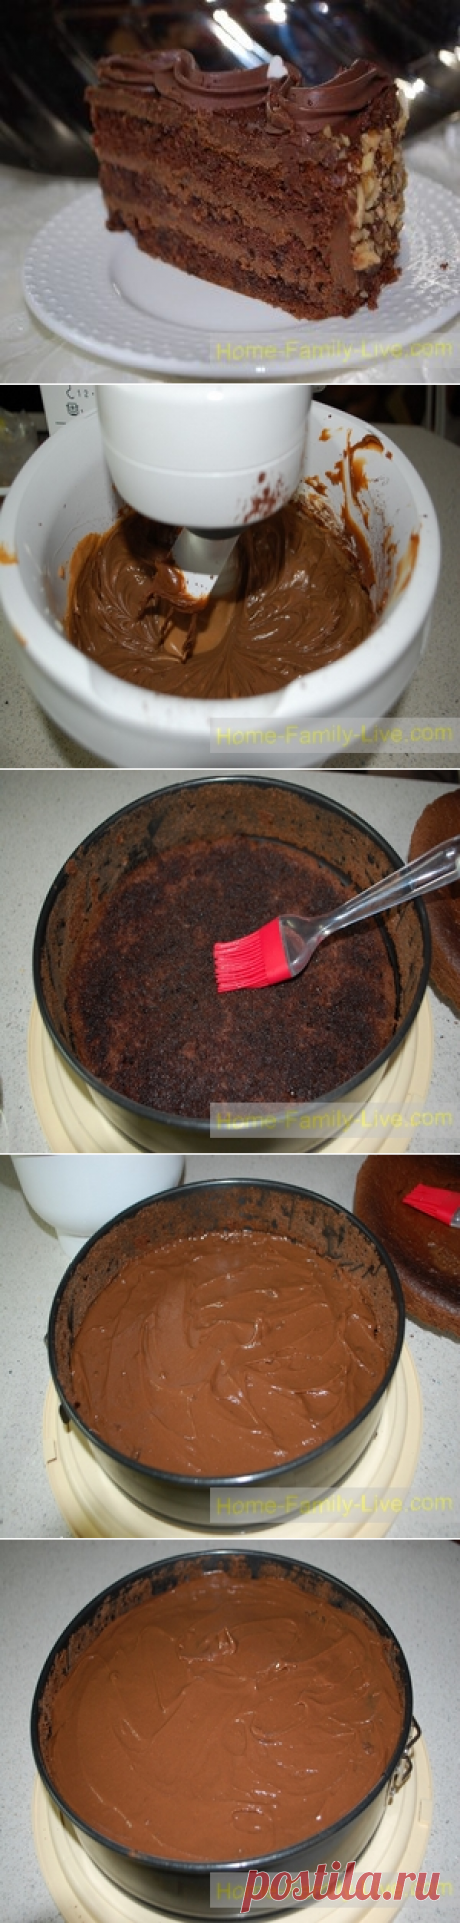 Торт шоколадный -пошаговый фоторецепт - десертКулинарные рецепты